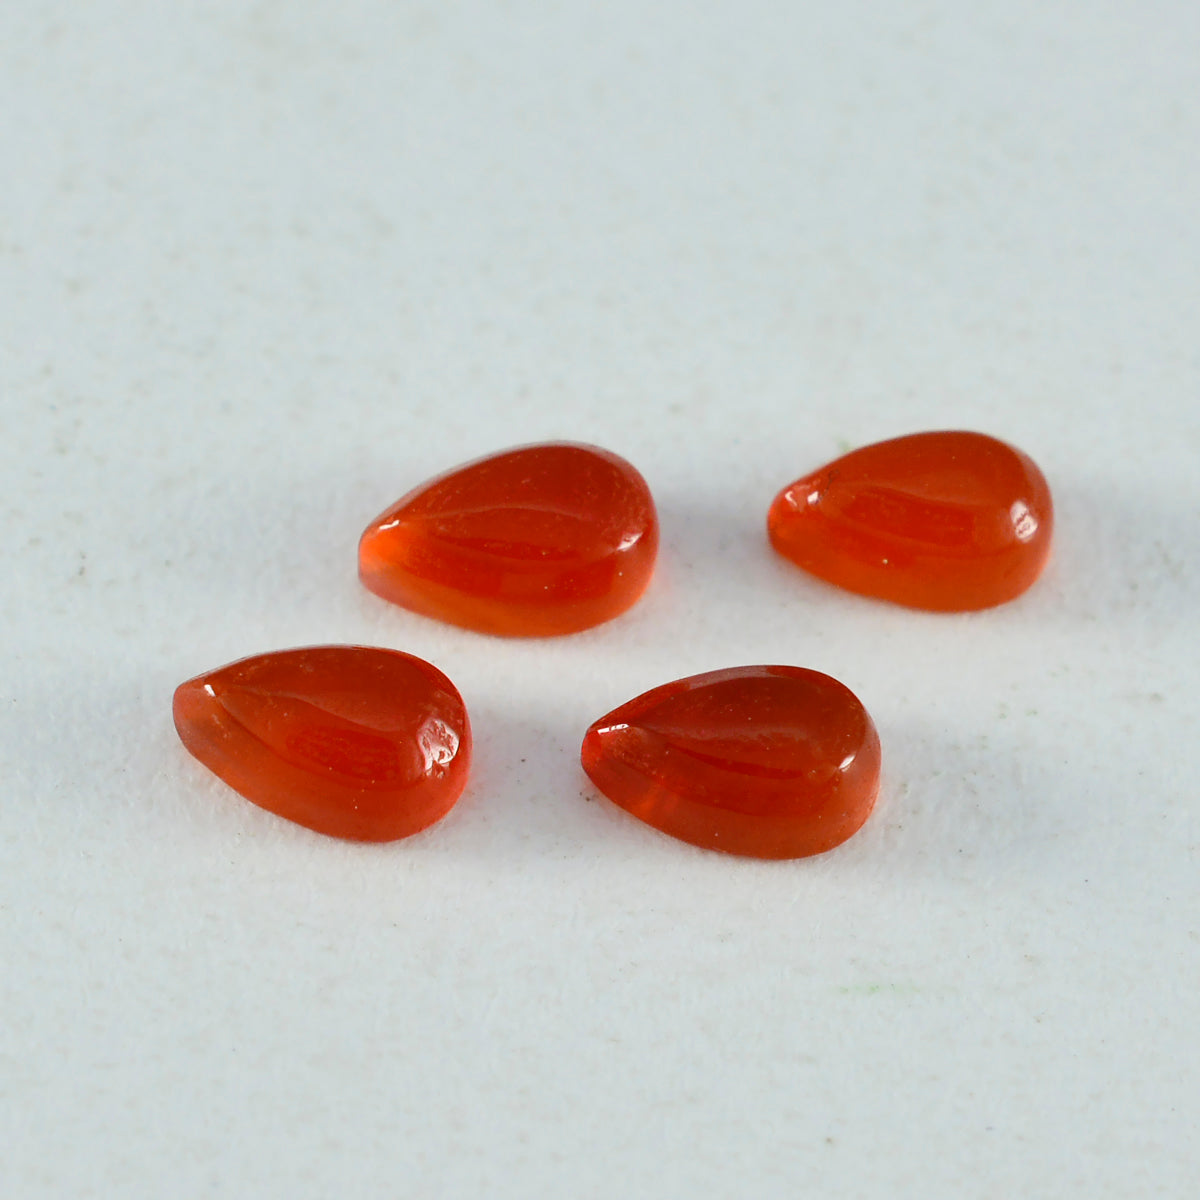 Riyogems 1 Stück roter Onyx-Cabochon, 7 x 10 mm, Birnenform, schön aussehende Qualitäts-Edelsteine